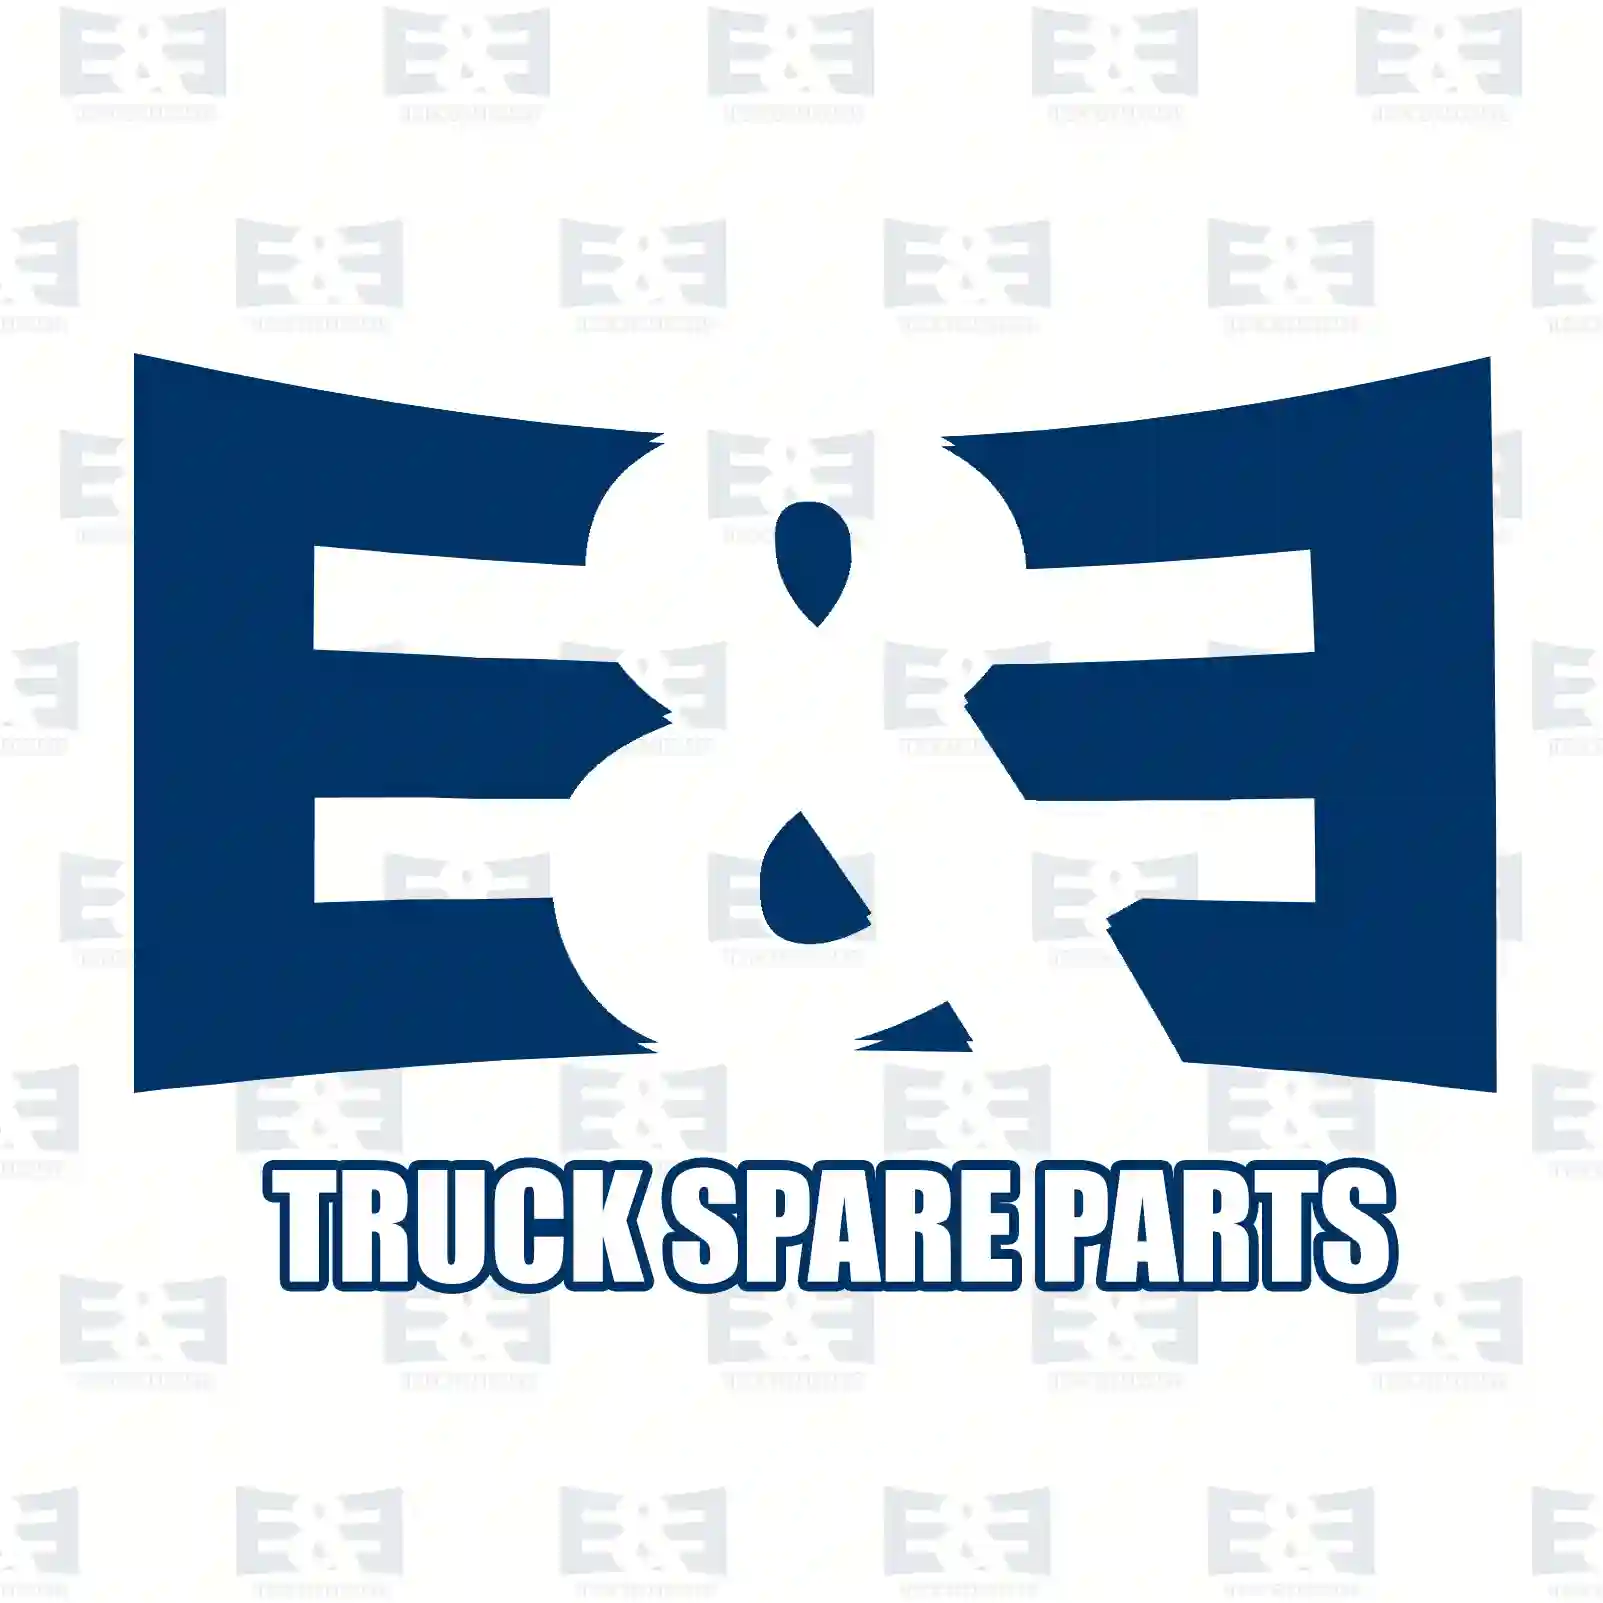 Exhaust brake, 2E2200923, 51152016182, 51152016298, 51152016316 ||  2E2200923 E&E Truck Spare Parts | Truck Spare Parts, Auotomotive Spare Parts Exhaust brake, 2E2200923, 51152016182, 51152016298, 51152016316 ||  2E2200923 E&E Truck Spare Parts | Truck Spare Parts, Auotomotive Spare Parts